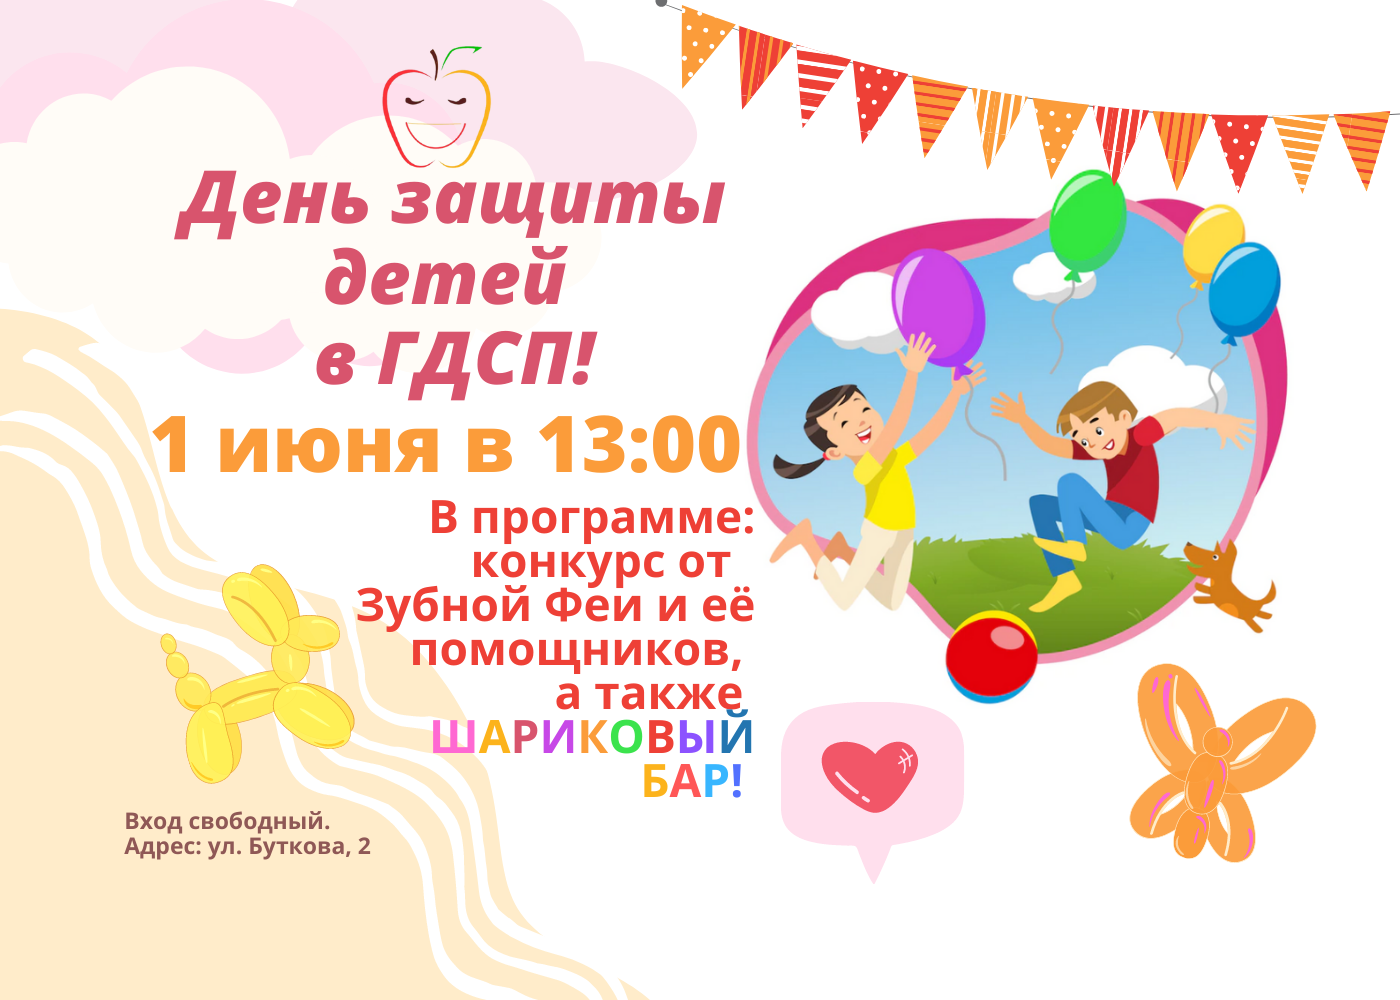 ГДСП приглашает на праздник Дня защиты детей!